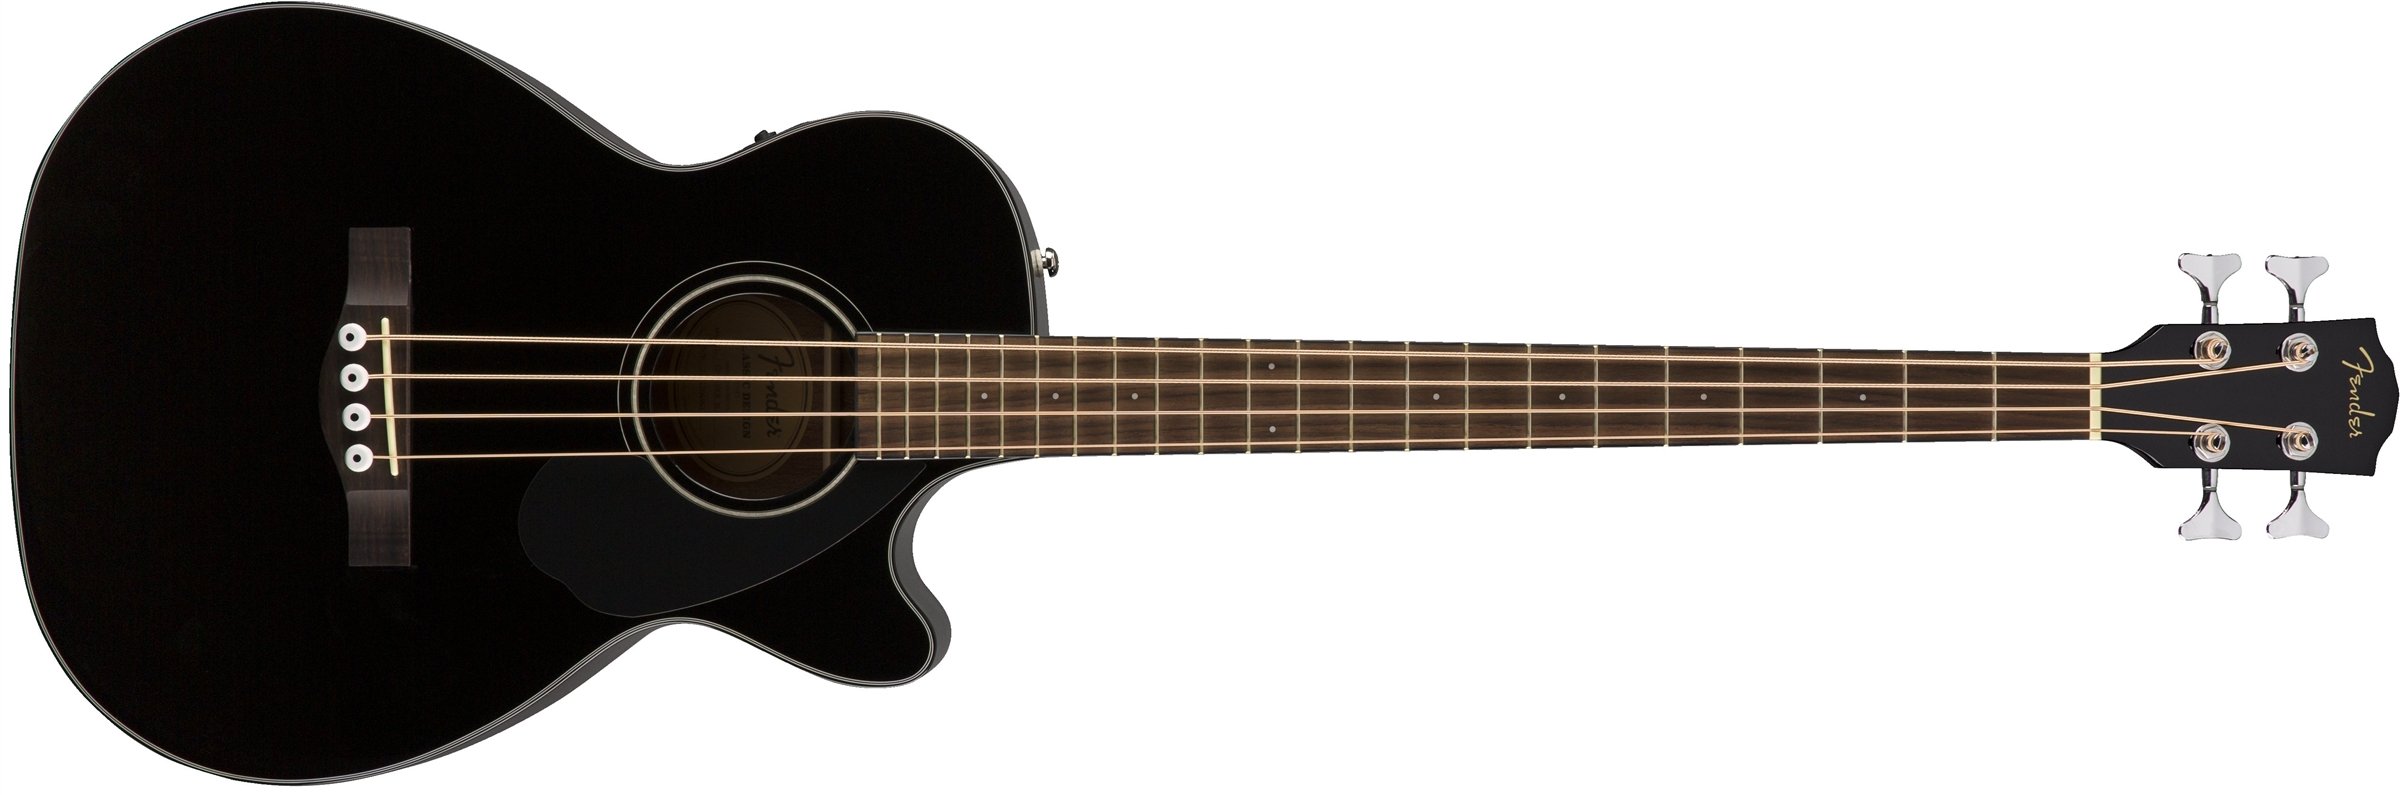 Fender सीबी-60एससीई ध्वनिक बास गिटार - काला...